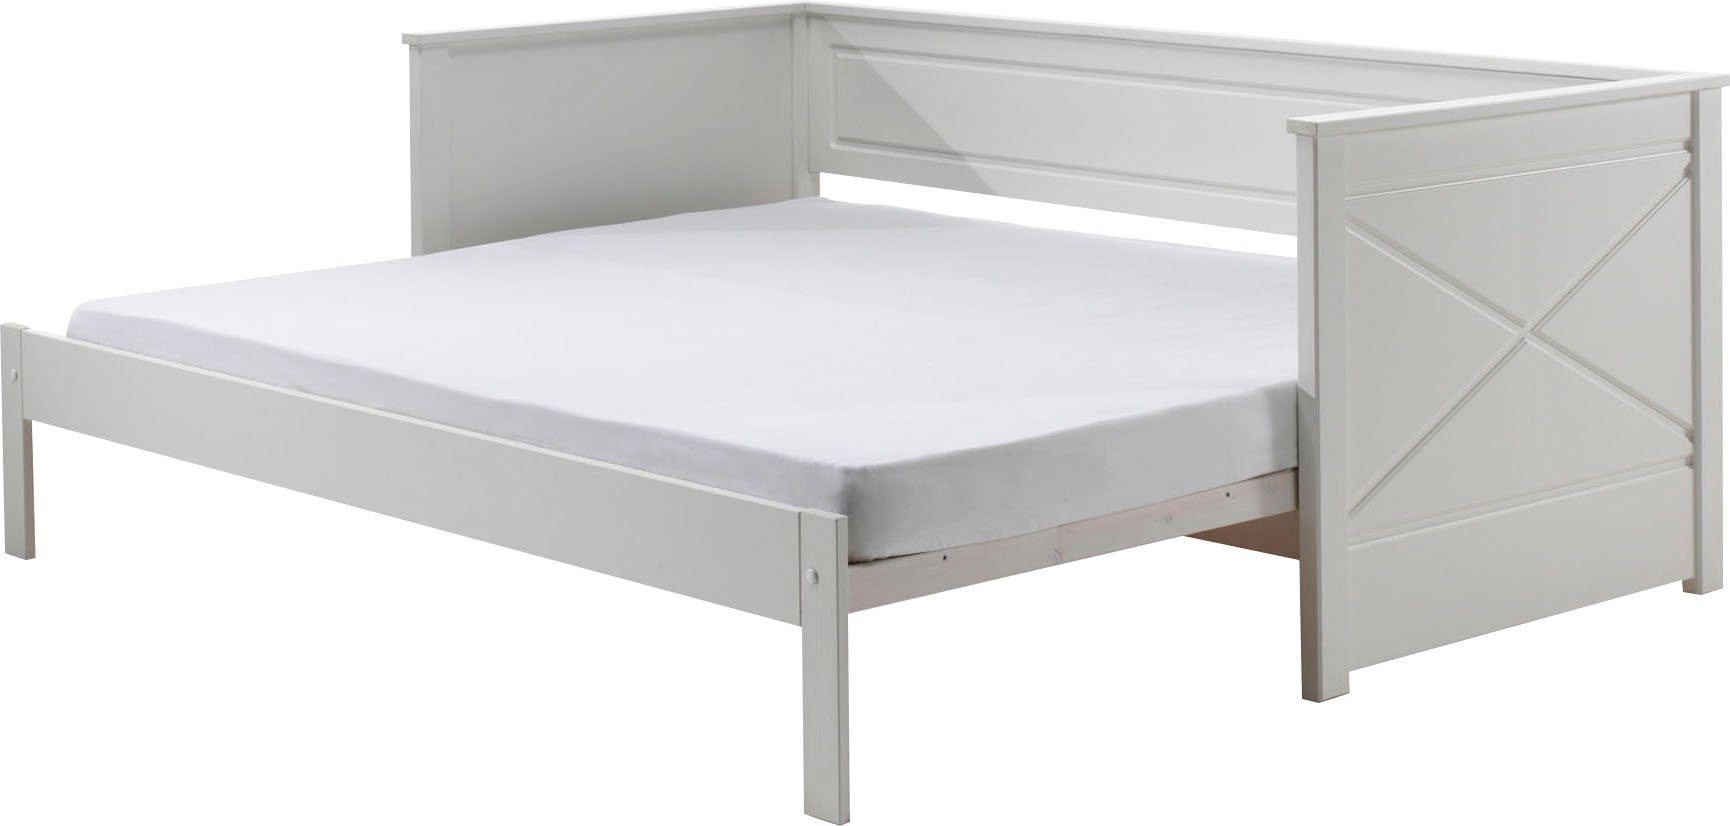 Weiß lackiert Vipack Ausf. auf LF Pino, Bett Vipack cm, cm, 180x200 90x200 ausziehen Kojenbett